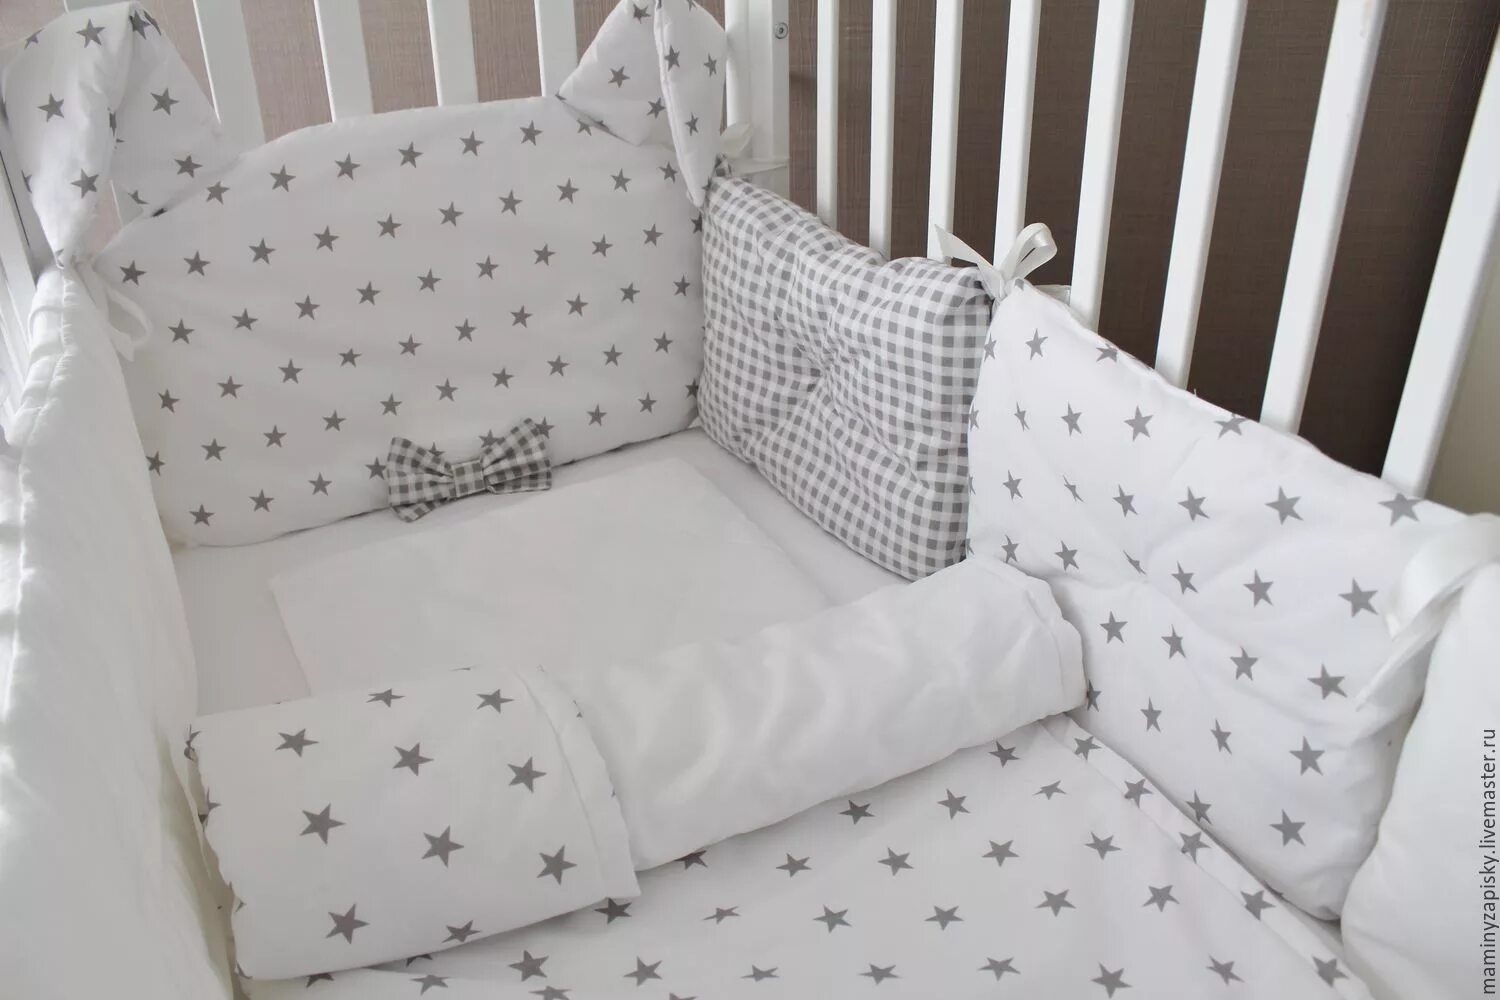 Комплект в кроватку для новорожденных с бортиками подушками. Комплект постельного белья для новорожденного в кроватку с бортиками. Комплект в кроватку для новорожденных с бортиками. Красивые бортики в кроватку. Комплект постельного белья для новорожденного